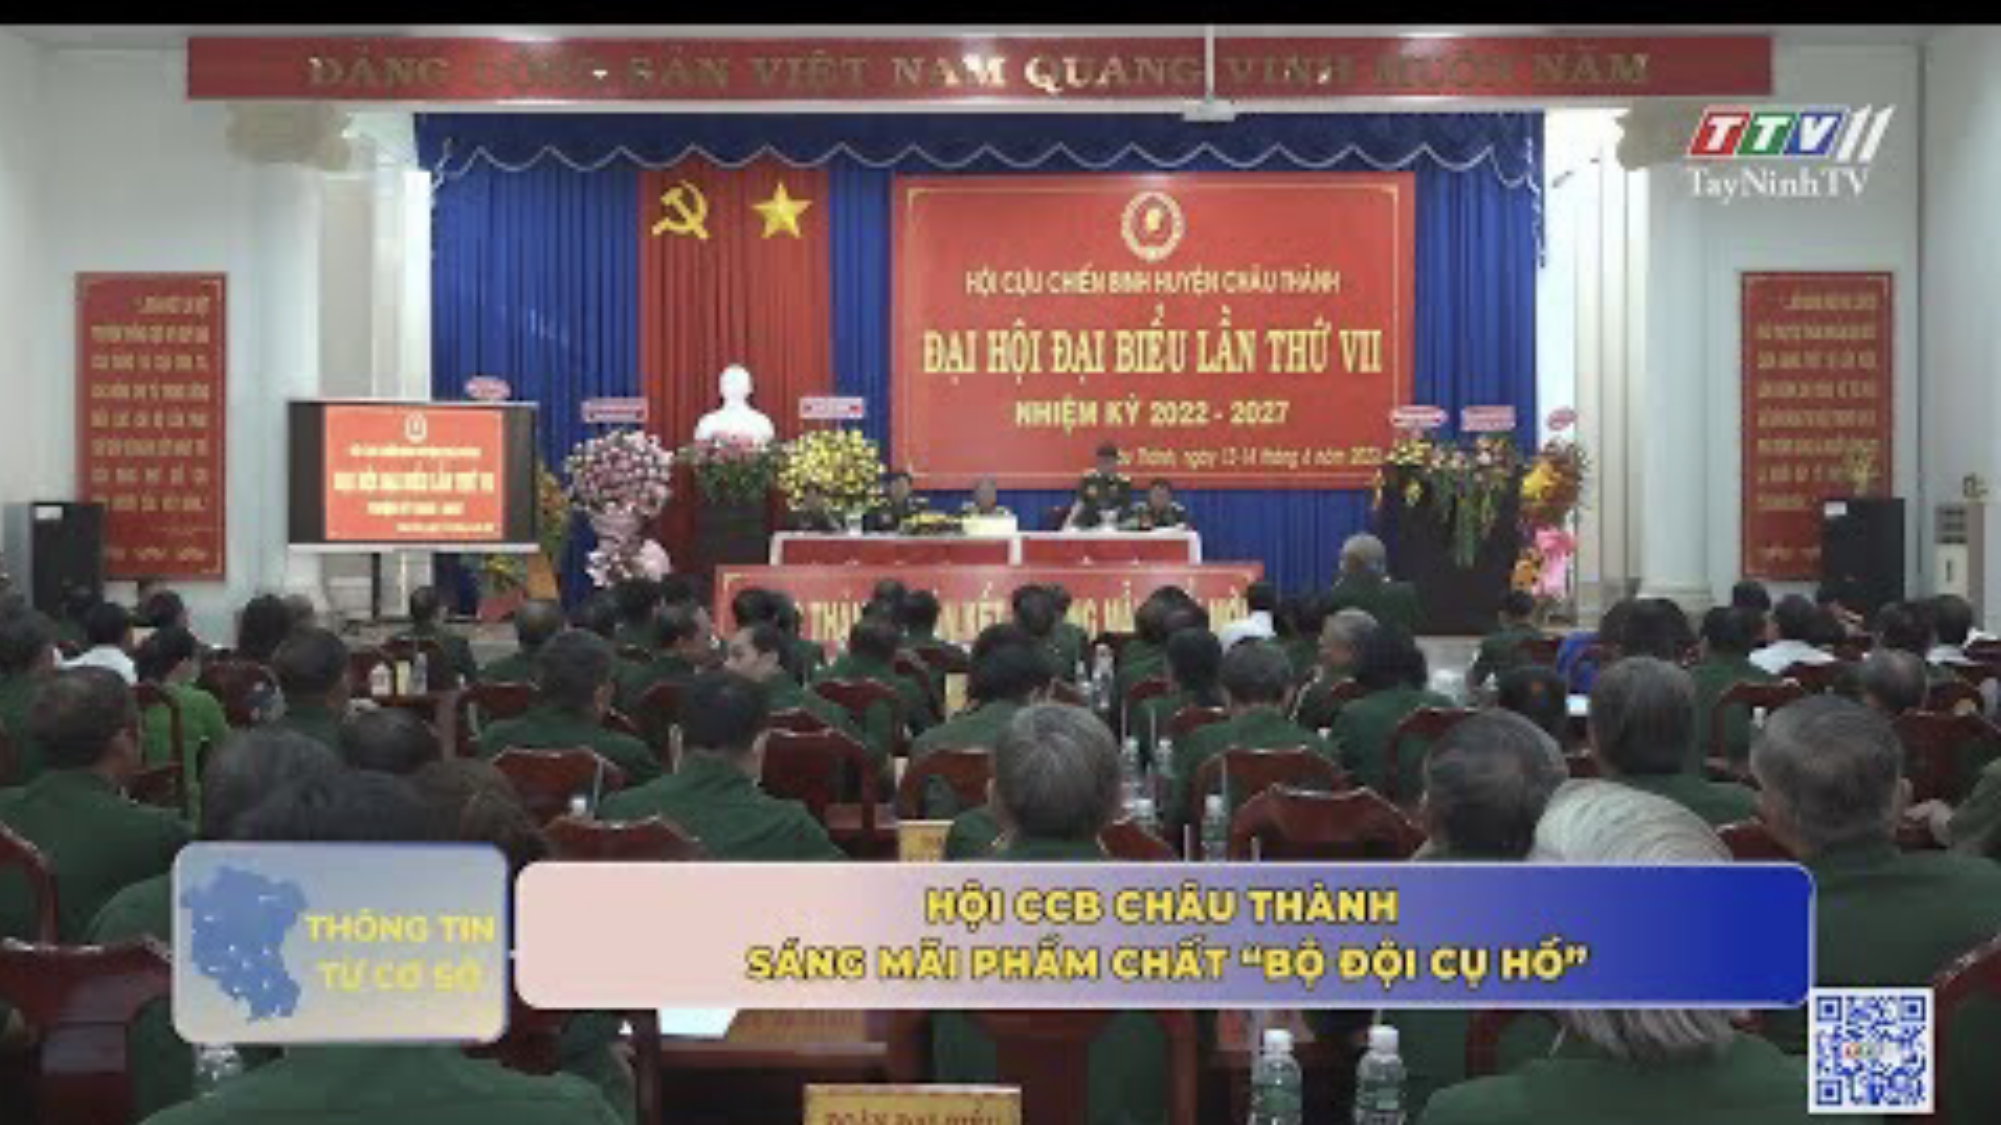 Hội CCB Châu Thành - Sáng mãi phẩm chất Bộ đội Cụ Hồ | Thông tin từ cơ sở | TayNinhTV